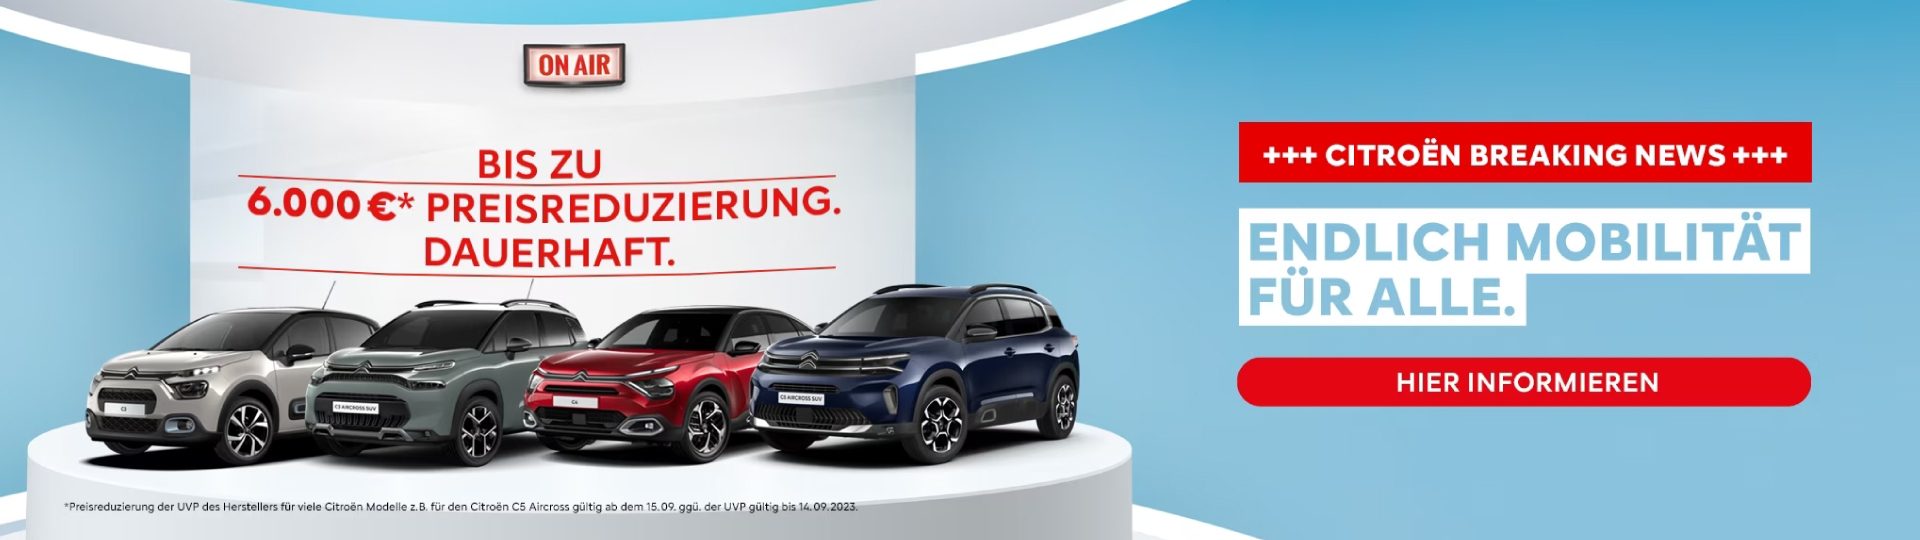 Citroën Preissenkung dauerhaft Autohaus Kuhn